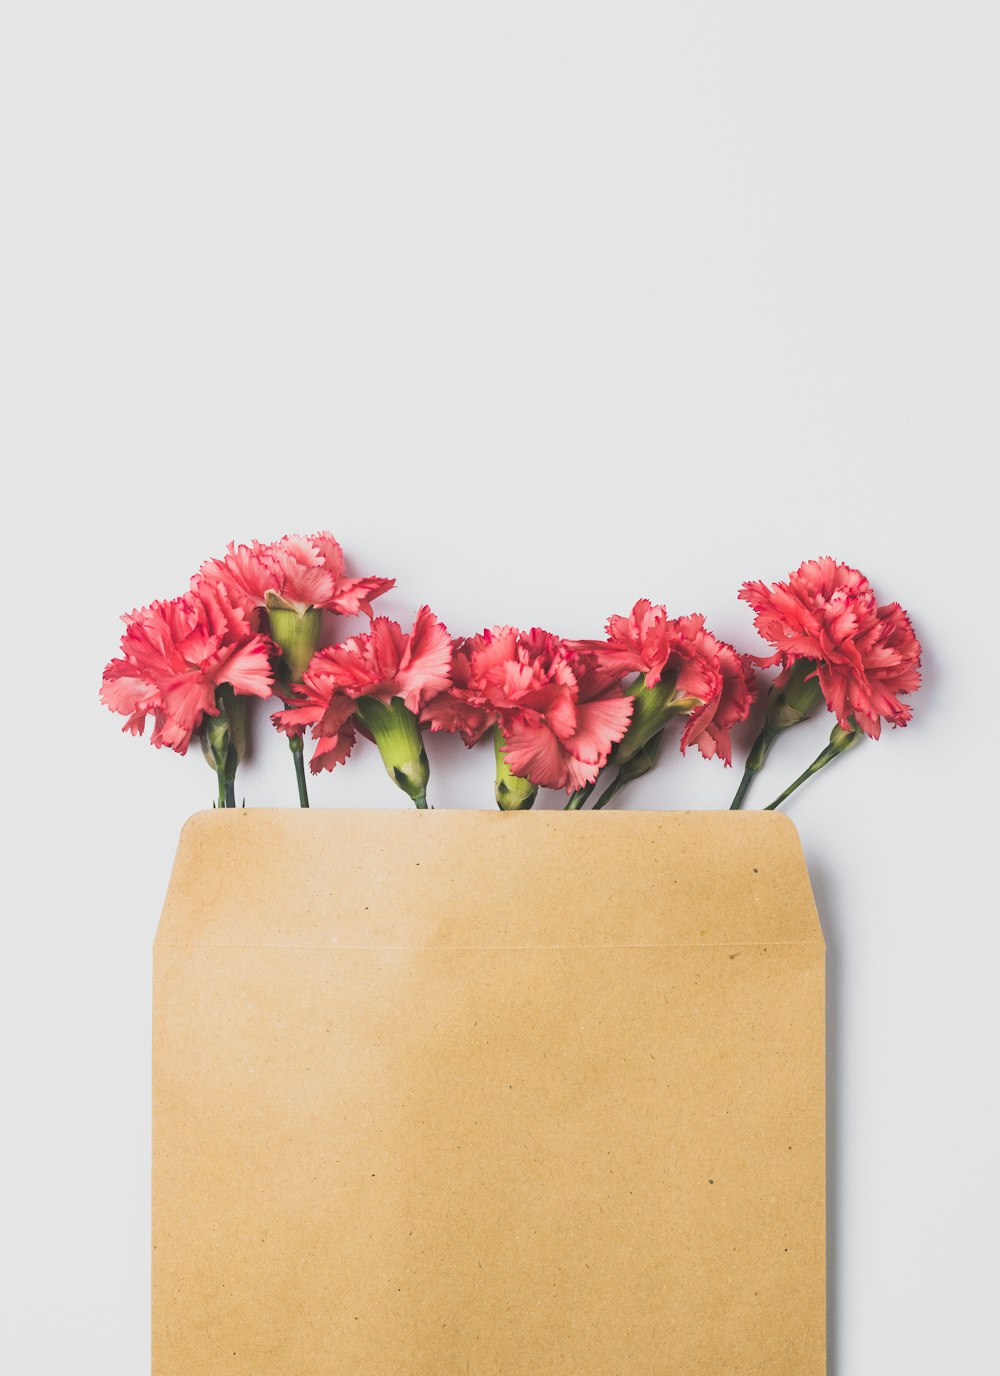 갈색 종이 봉지에 분홍색 장미